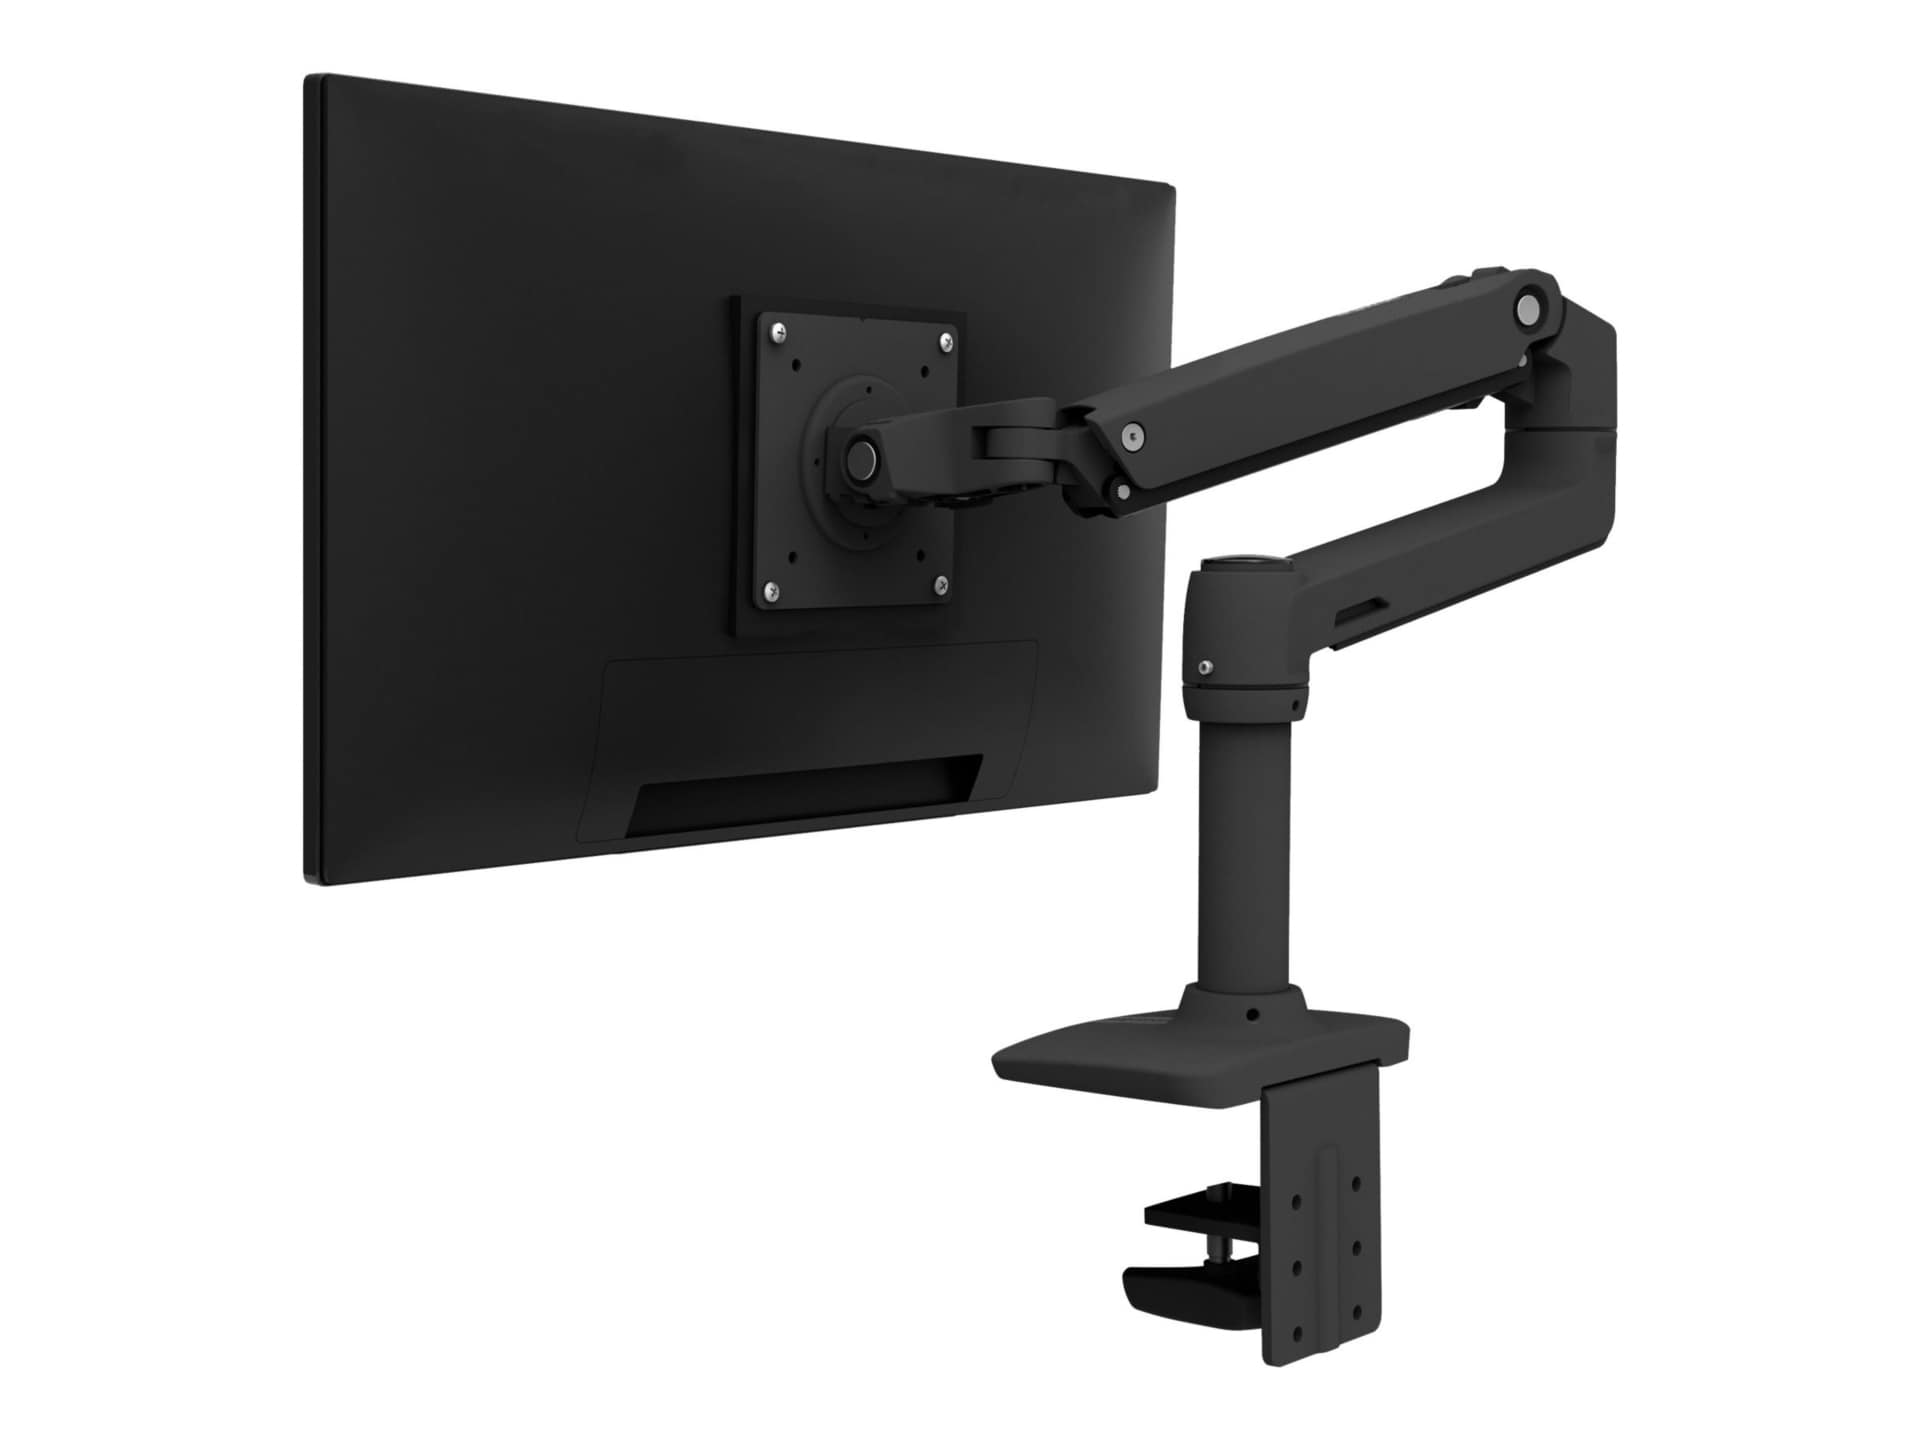 Ergotron LX kit de montage - Technologie brevetée Constant Force - pour Écran LCD - noir mat